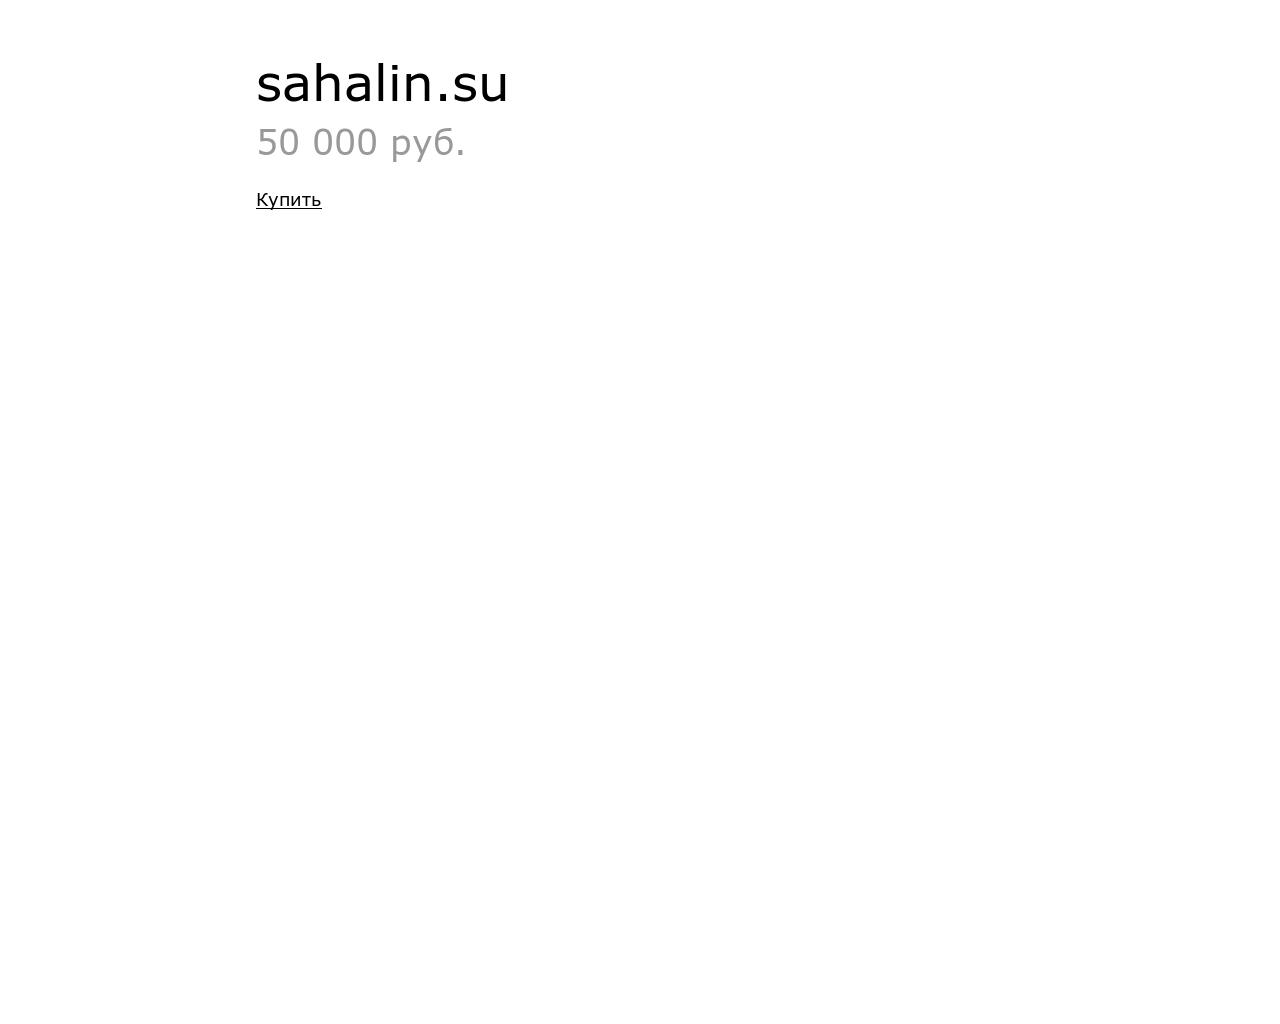 Изображение сайта sahalin.su в разрешении 1280x1024